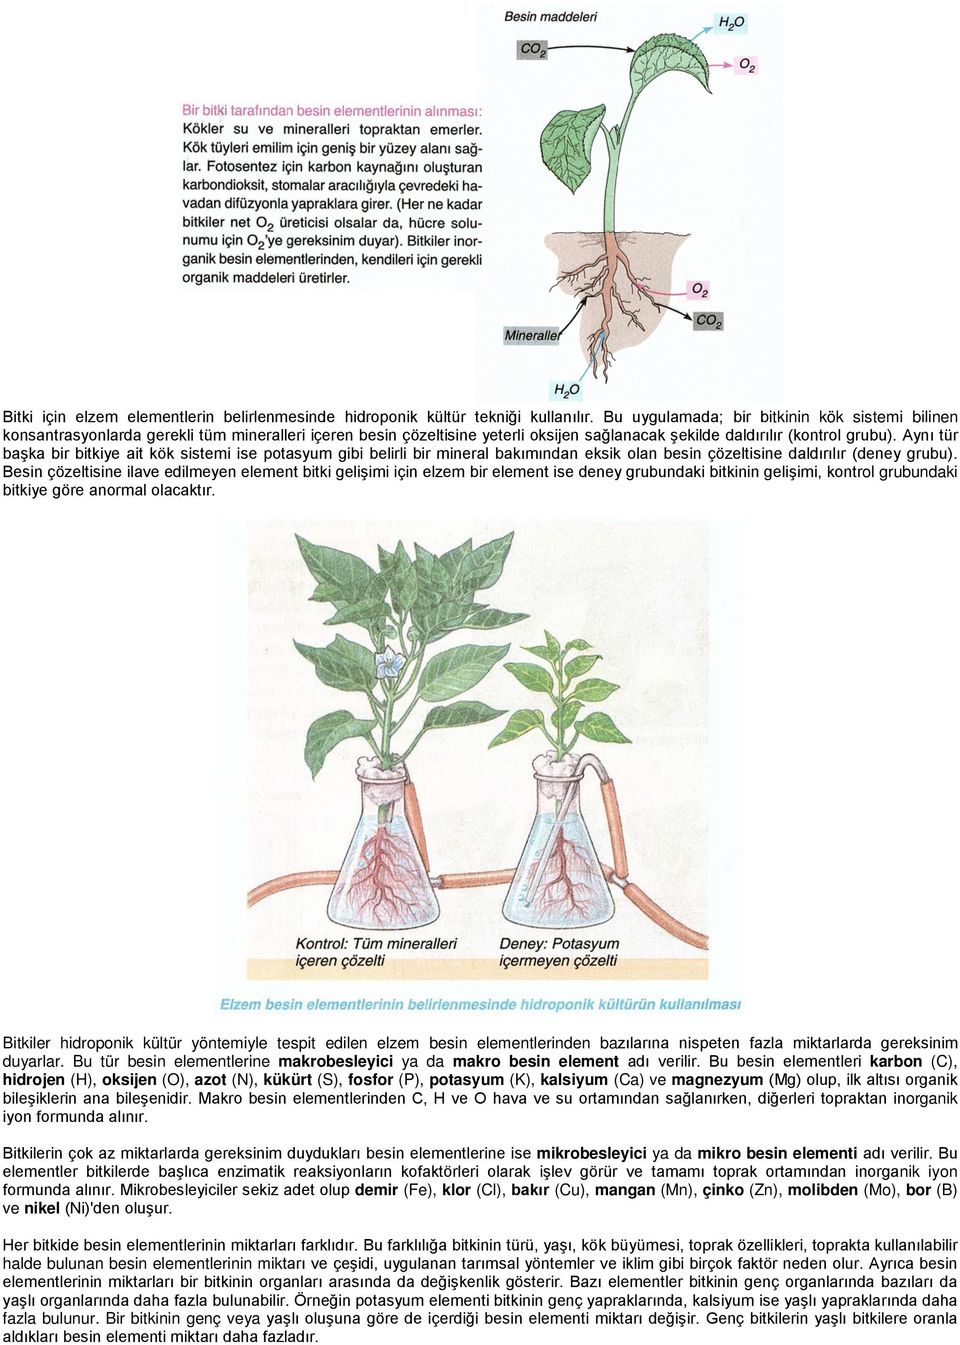 Aynı tür başka bir bitkiye ait kök sistemi ise potasyum gibi belirli bir mineral bakımından eksik olan besin çözeltisine daldırılır (deney grubu).